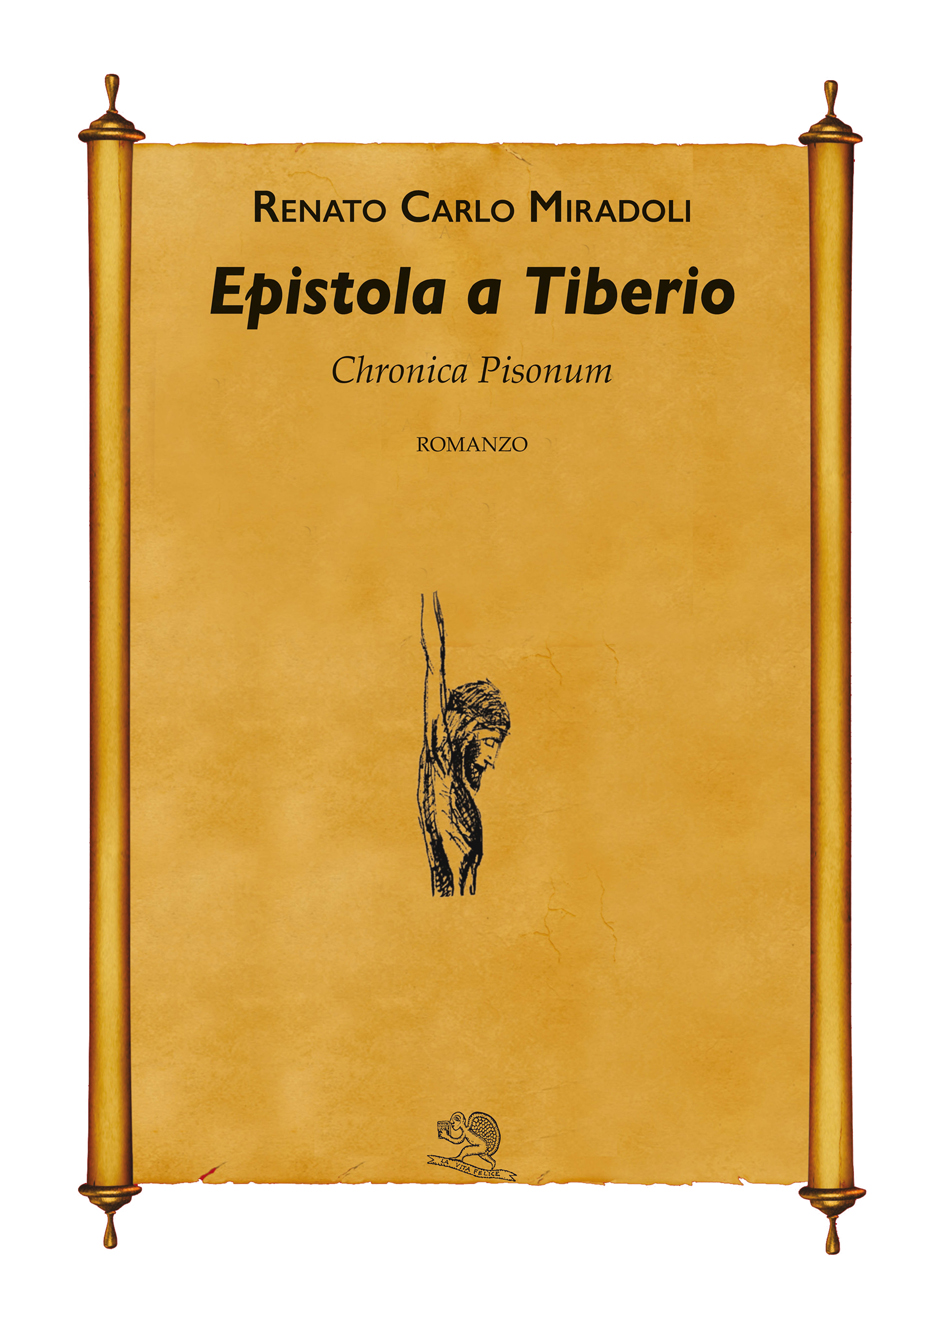 Epistola a Tiberio - Chronica Pisonum - Renato Carlo Miradoli. 2015 BiElleEsse Editore